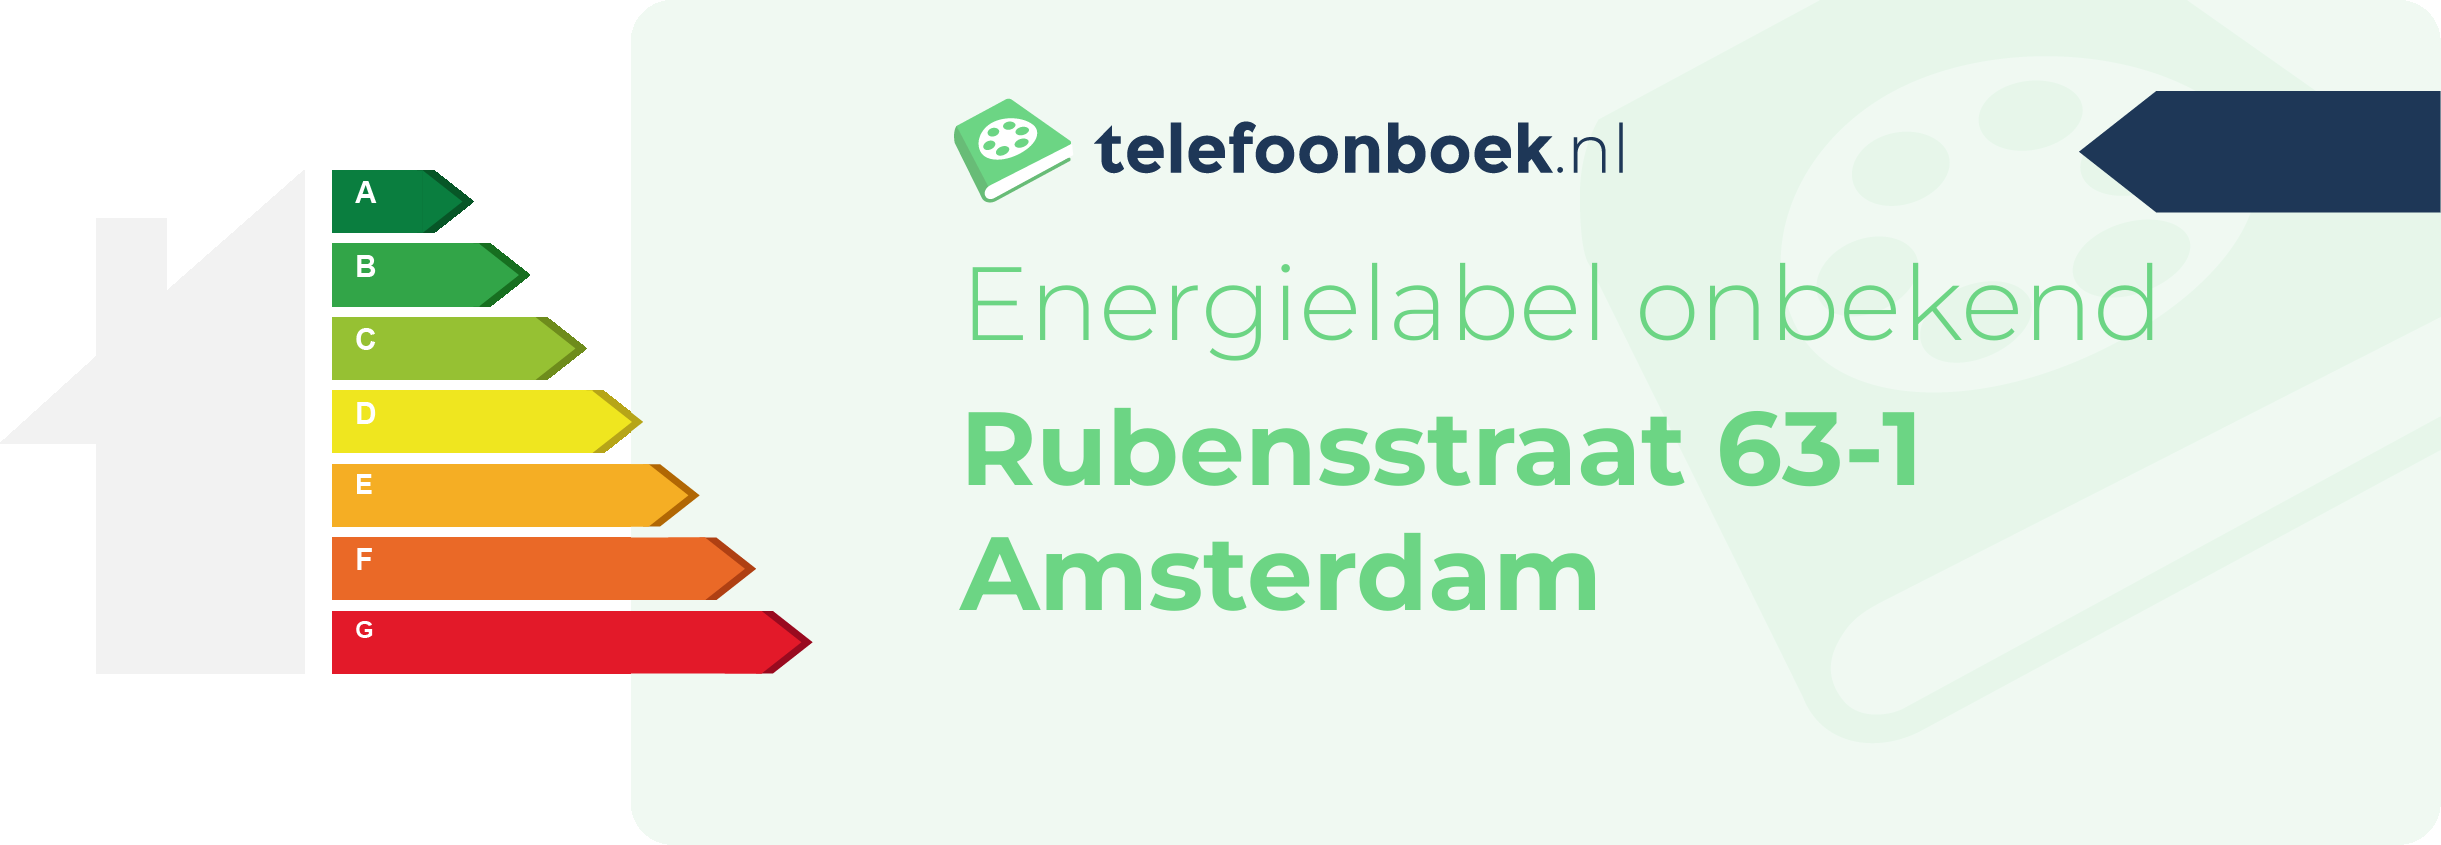 Energielabel Rubensstraat 63-1 Amsterdam